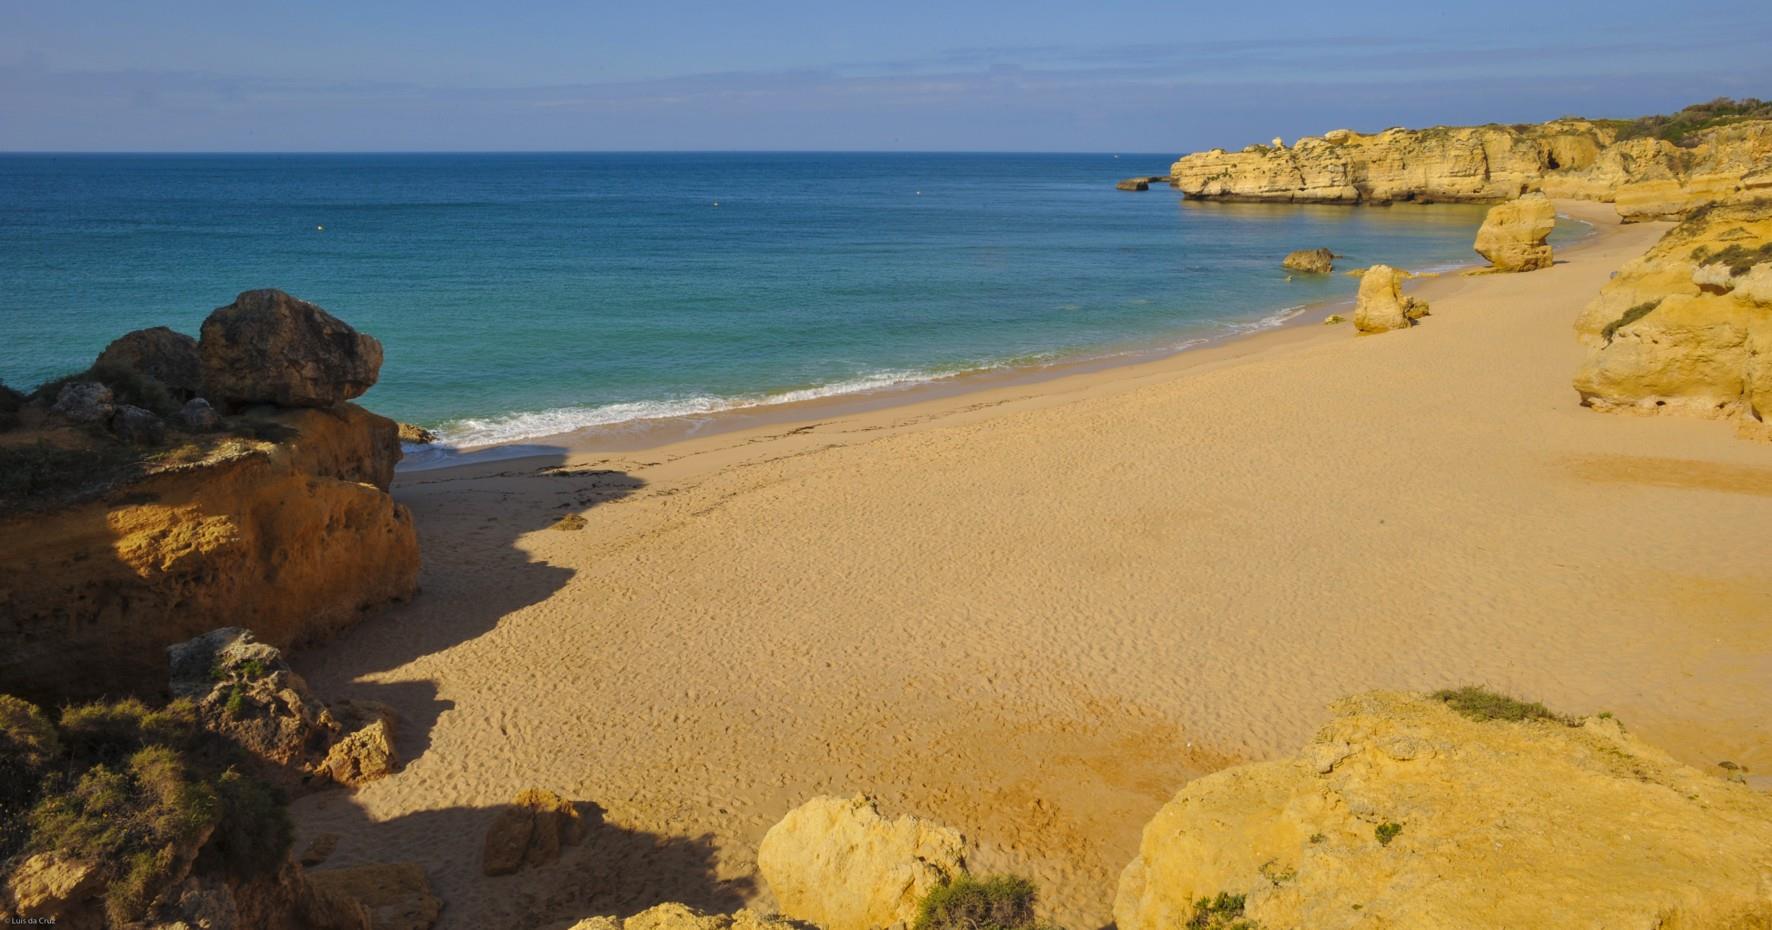 Beach scene in the Algarve